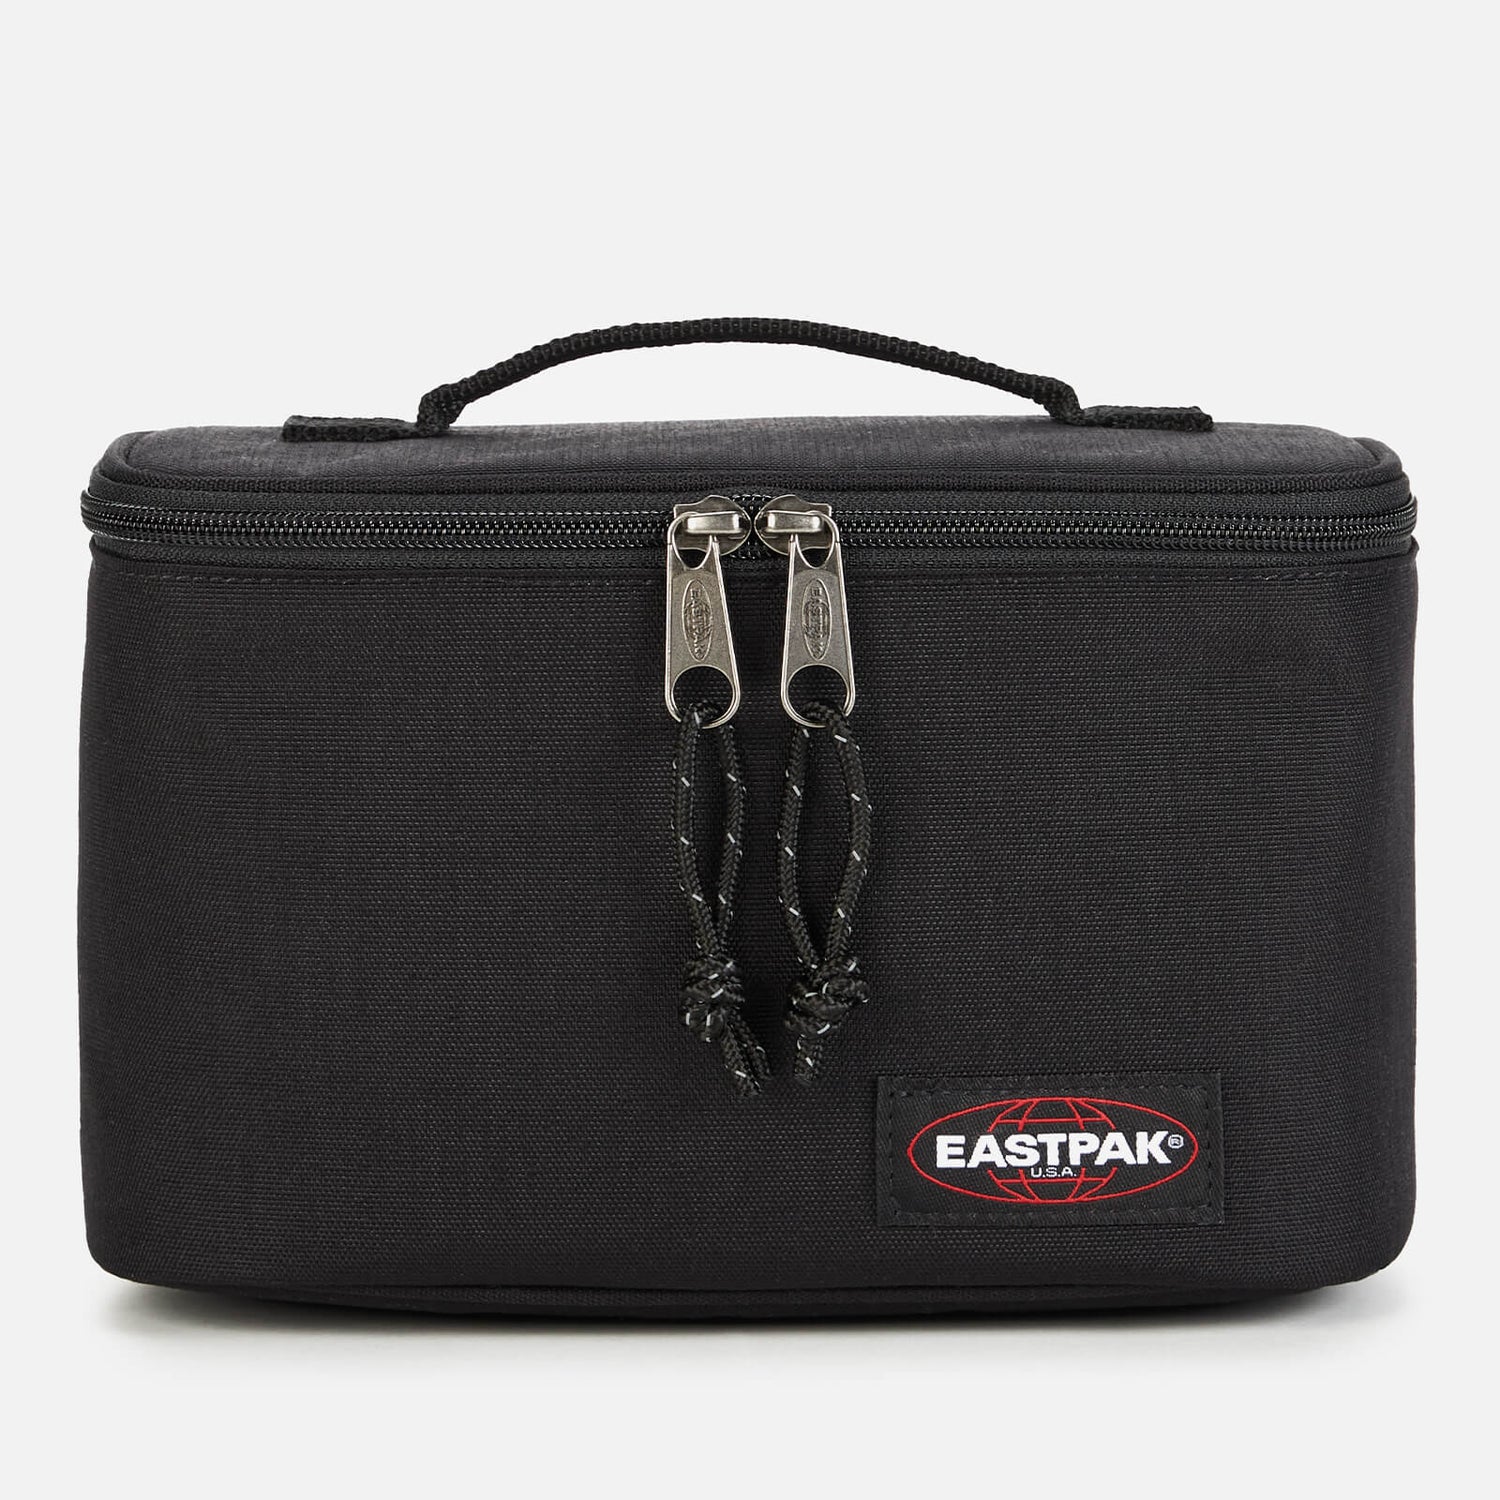 Eastpak Oval Lunch Bag - Black